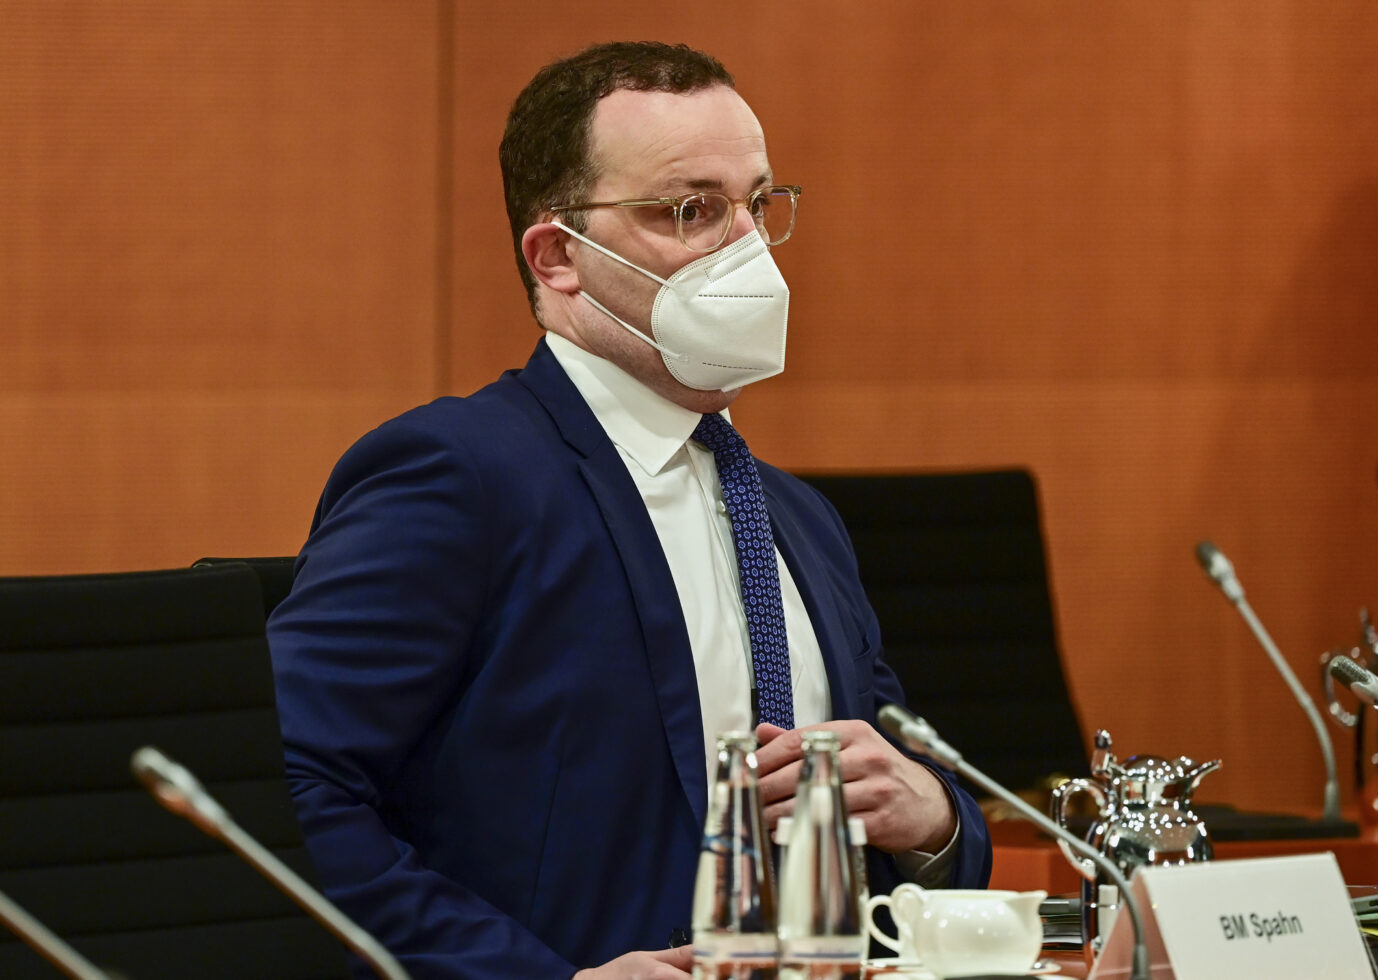 Der damalige Gesundheitsminister Jens Spahn (CDU) steht im Zentrum der Kritik wegen der Masken-Deals in der Corona-Zeit.